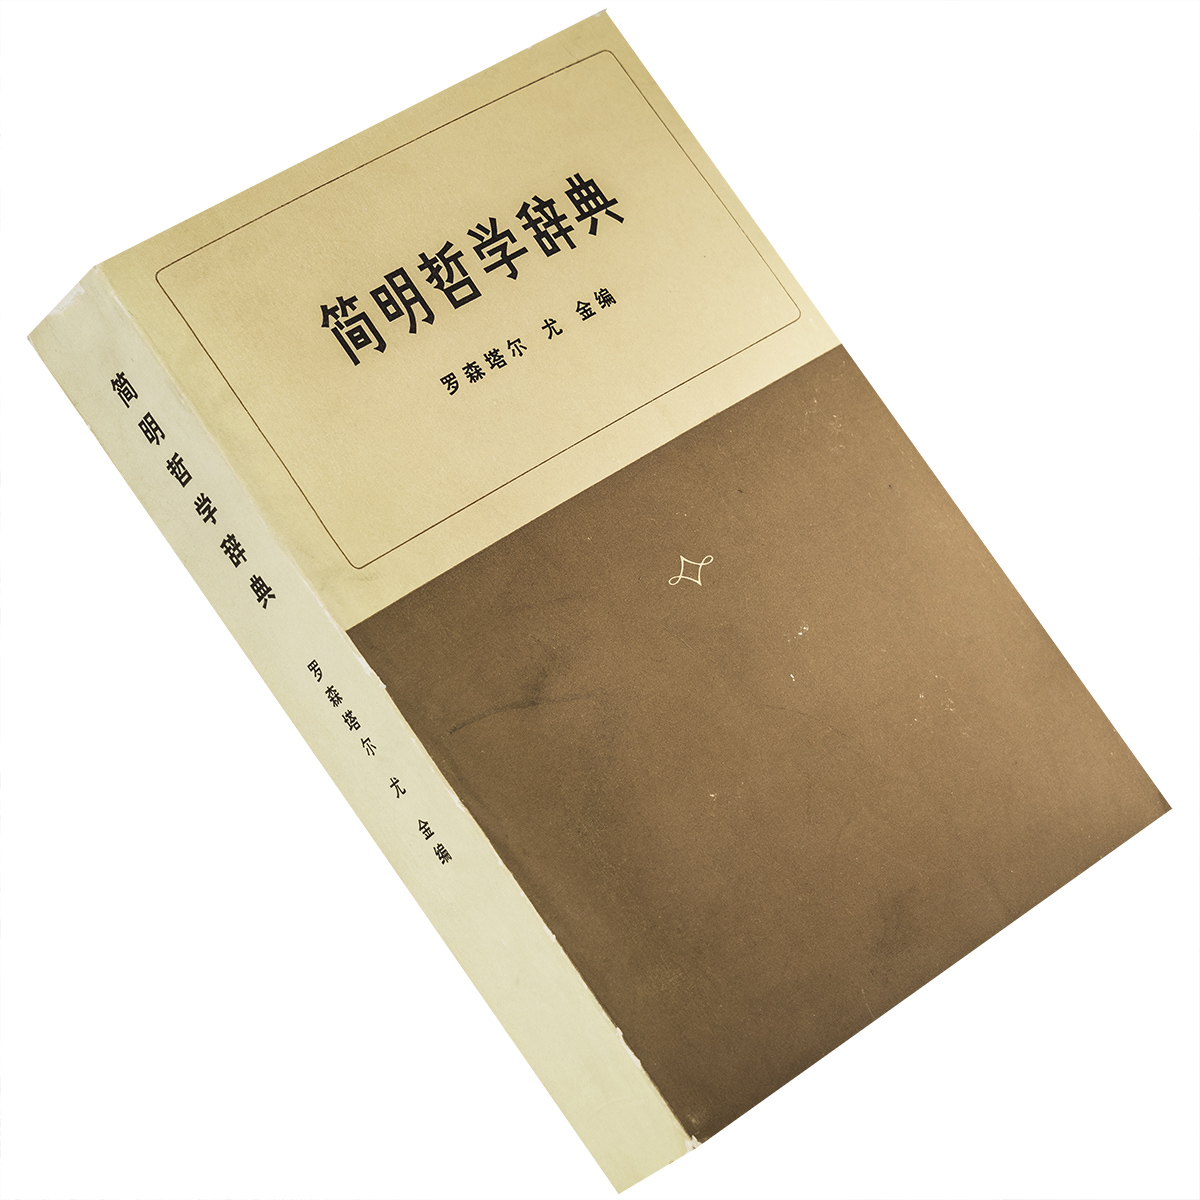 简明哲学辞典词 罗森塔尔 尤金 三联书店 正版书籍 老版本  旧书  繁体文